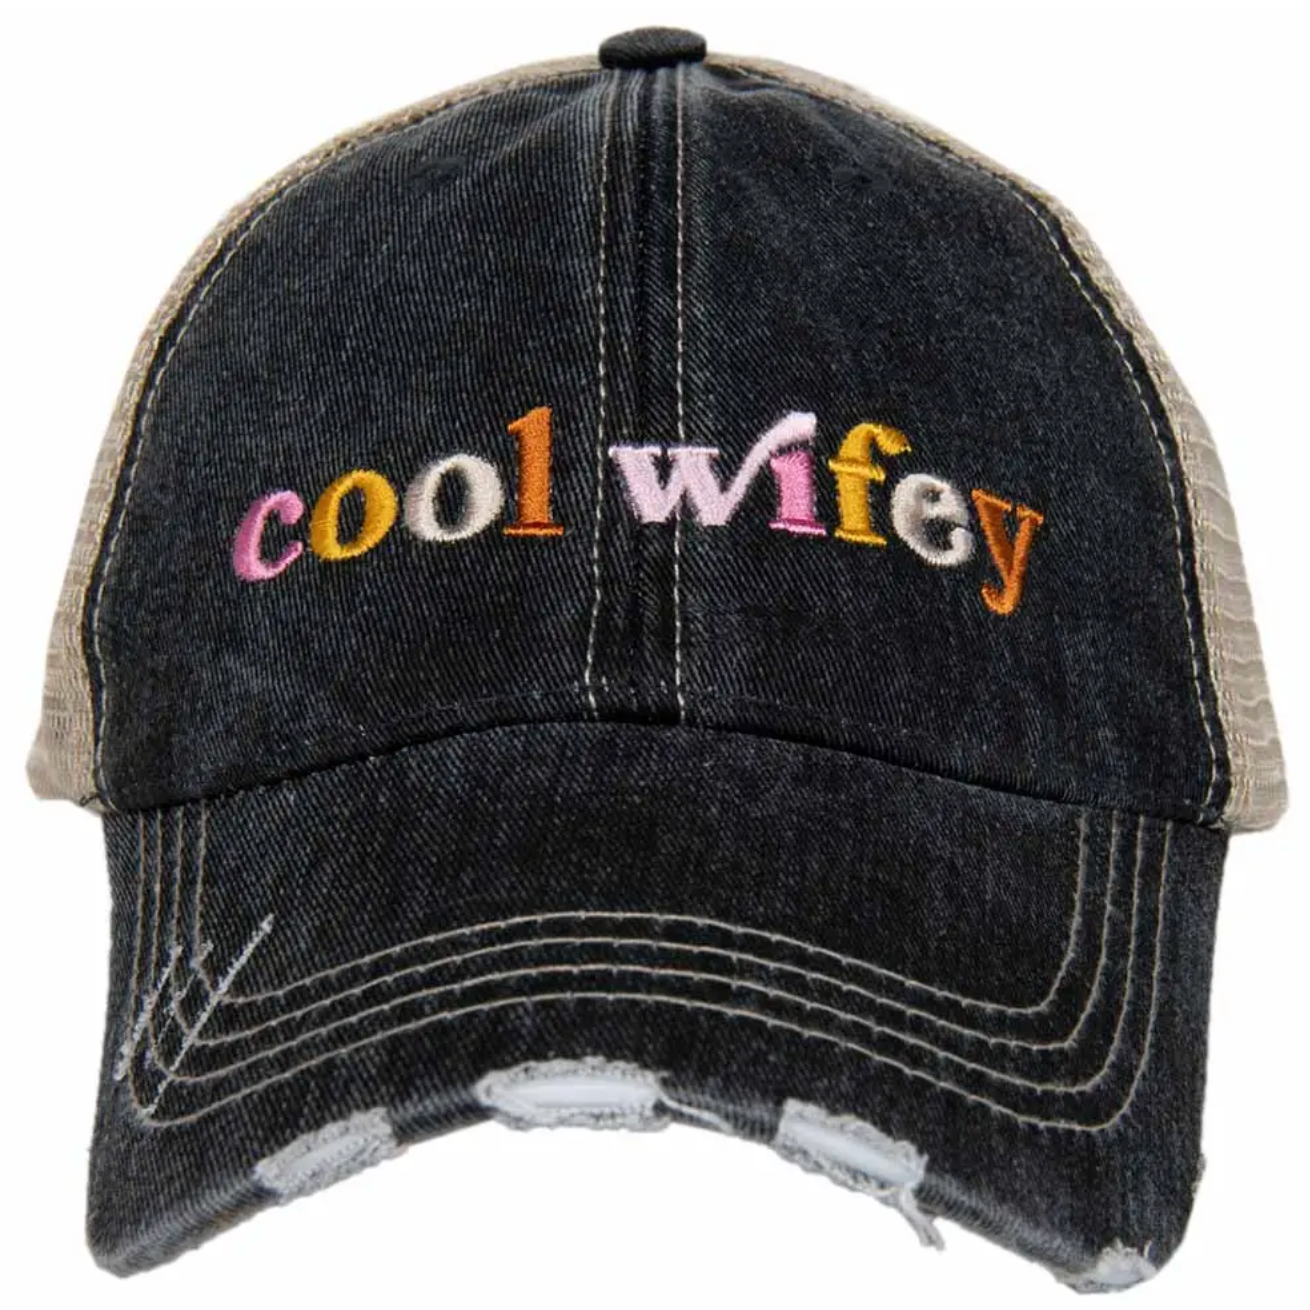 Cool Wifey Trucker Hat by Katydid